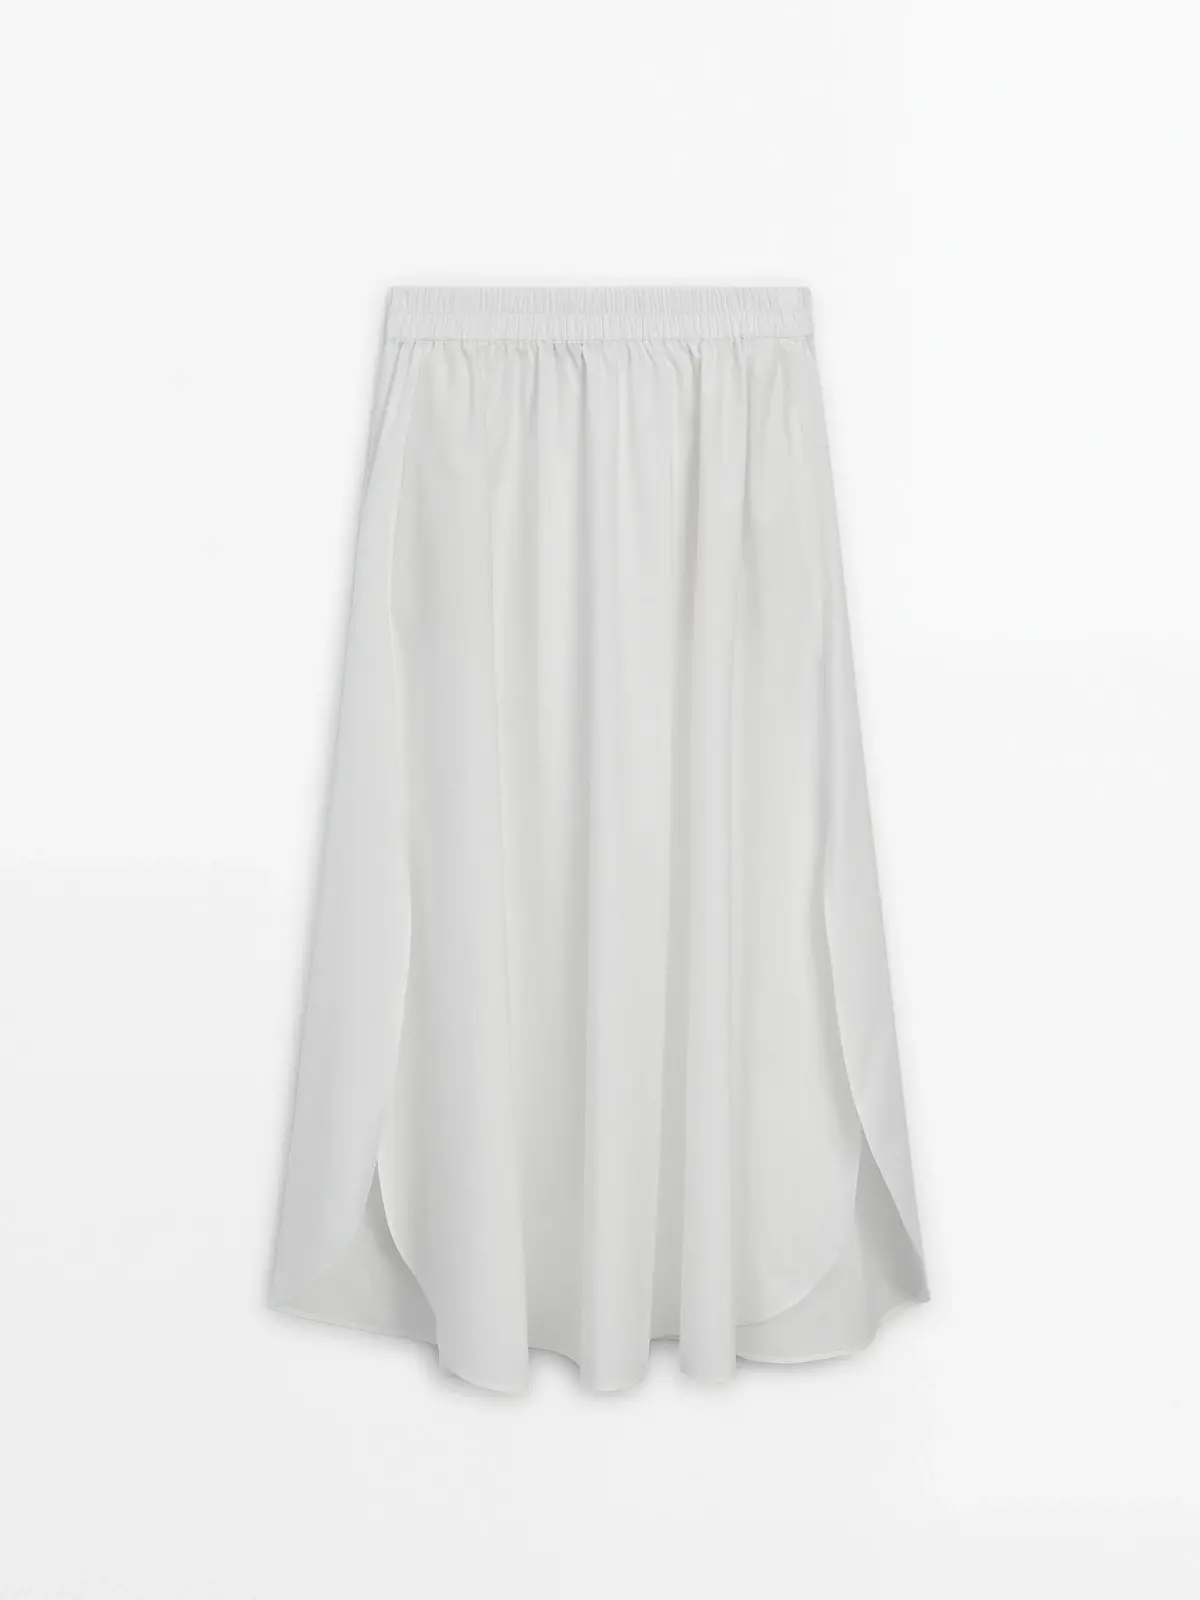 Falda blanca larga